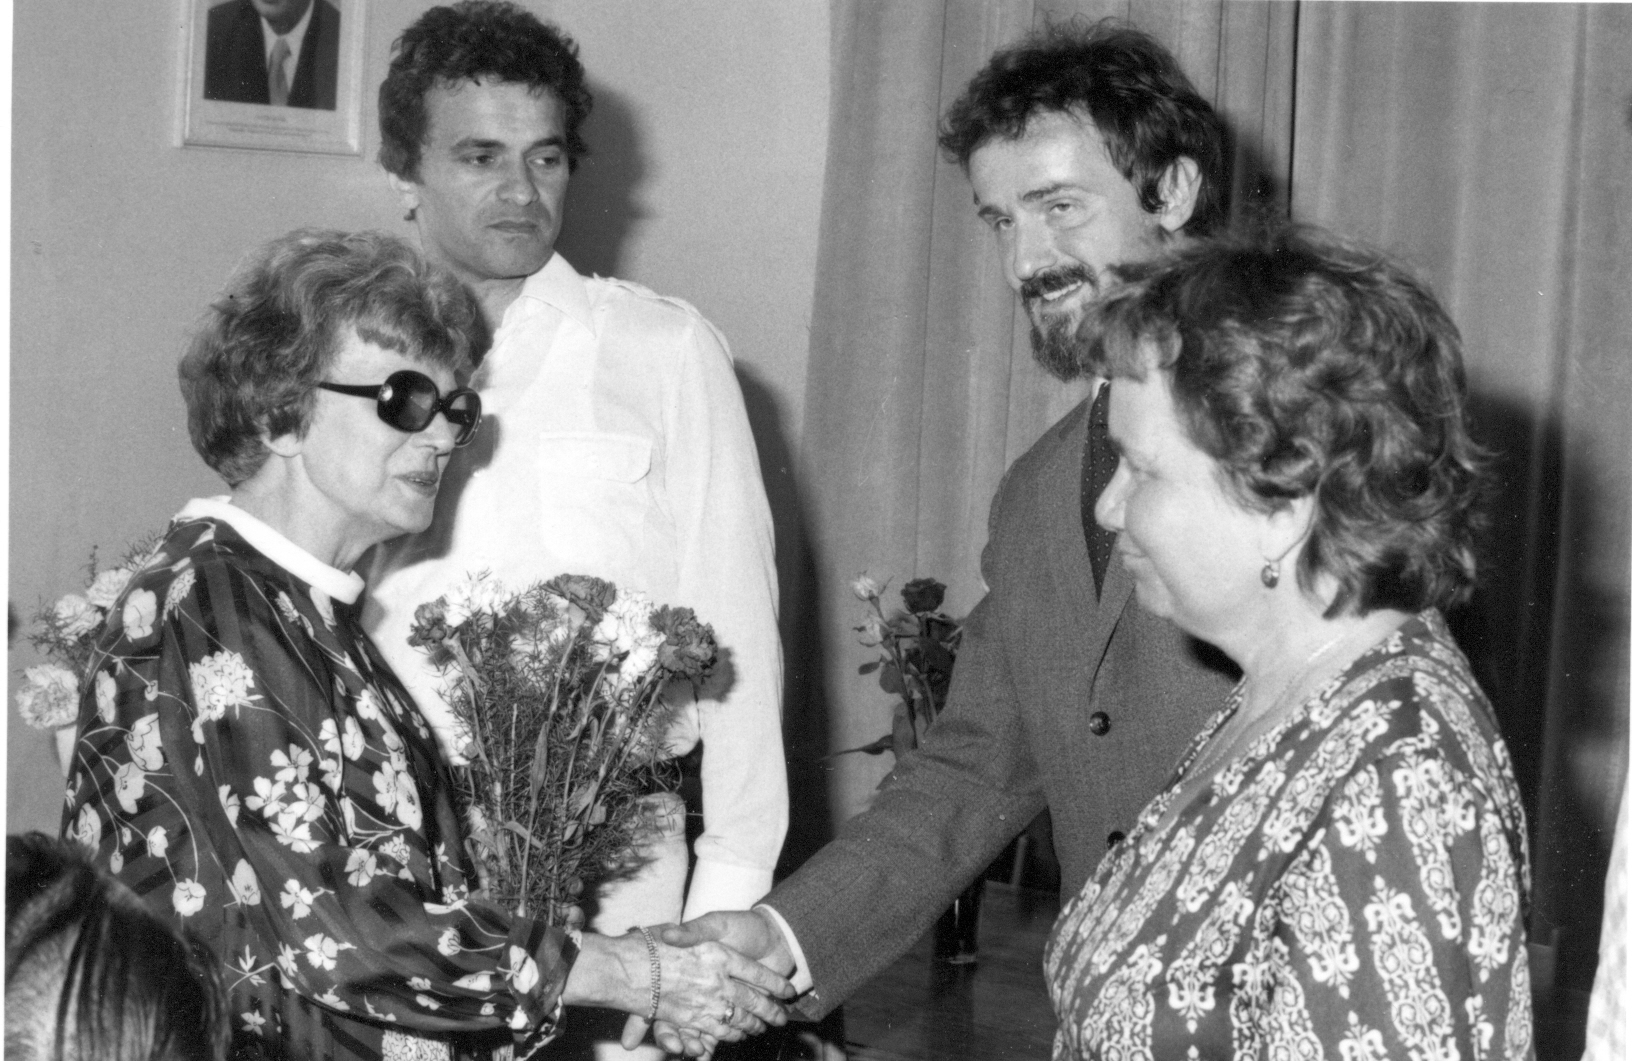 Odchod zastupující ředitelky SÚPPOP Dr. Svobodové do penze, 1983, loučí se zleva: Dr. Kučera, Dr. Štulc, Dr. Maršáková. Foto archiv Bohumila Kučery